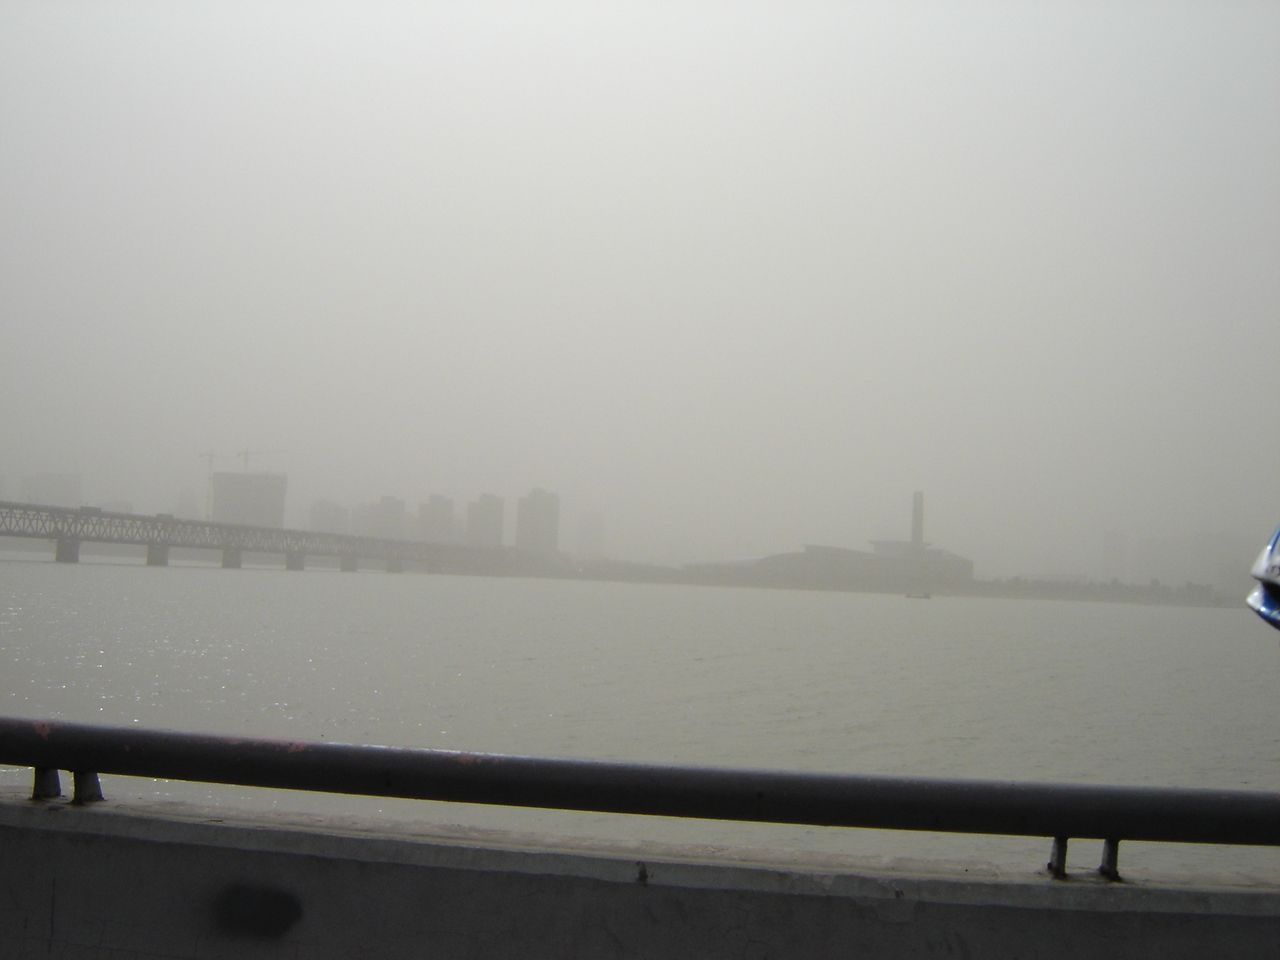 杭州的沙尘天气，头一会见过。之前在北京是常见的天气